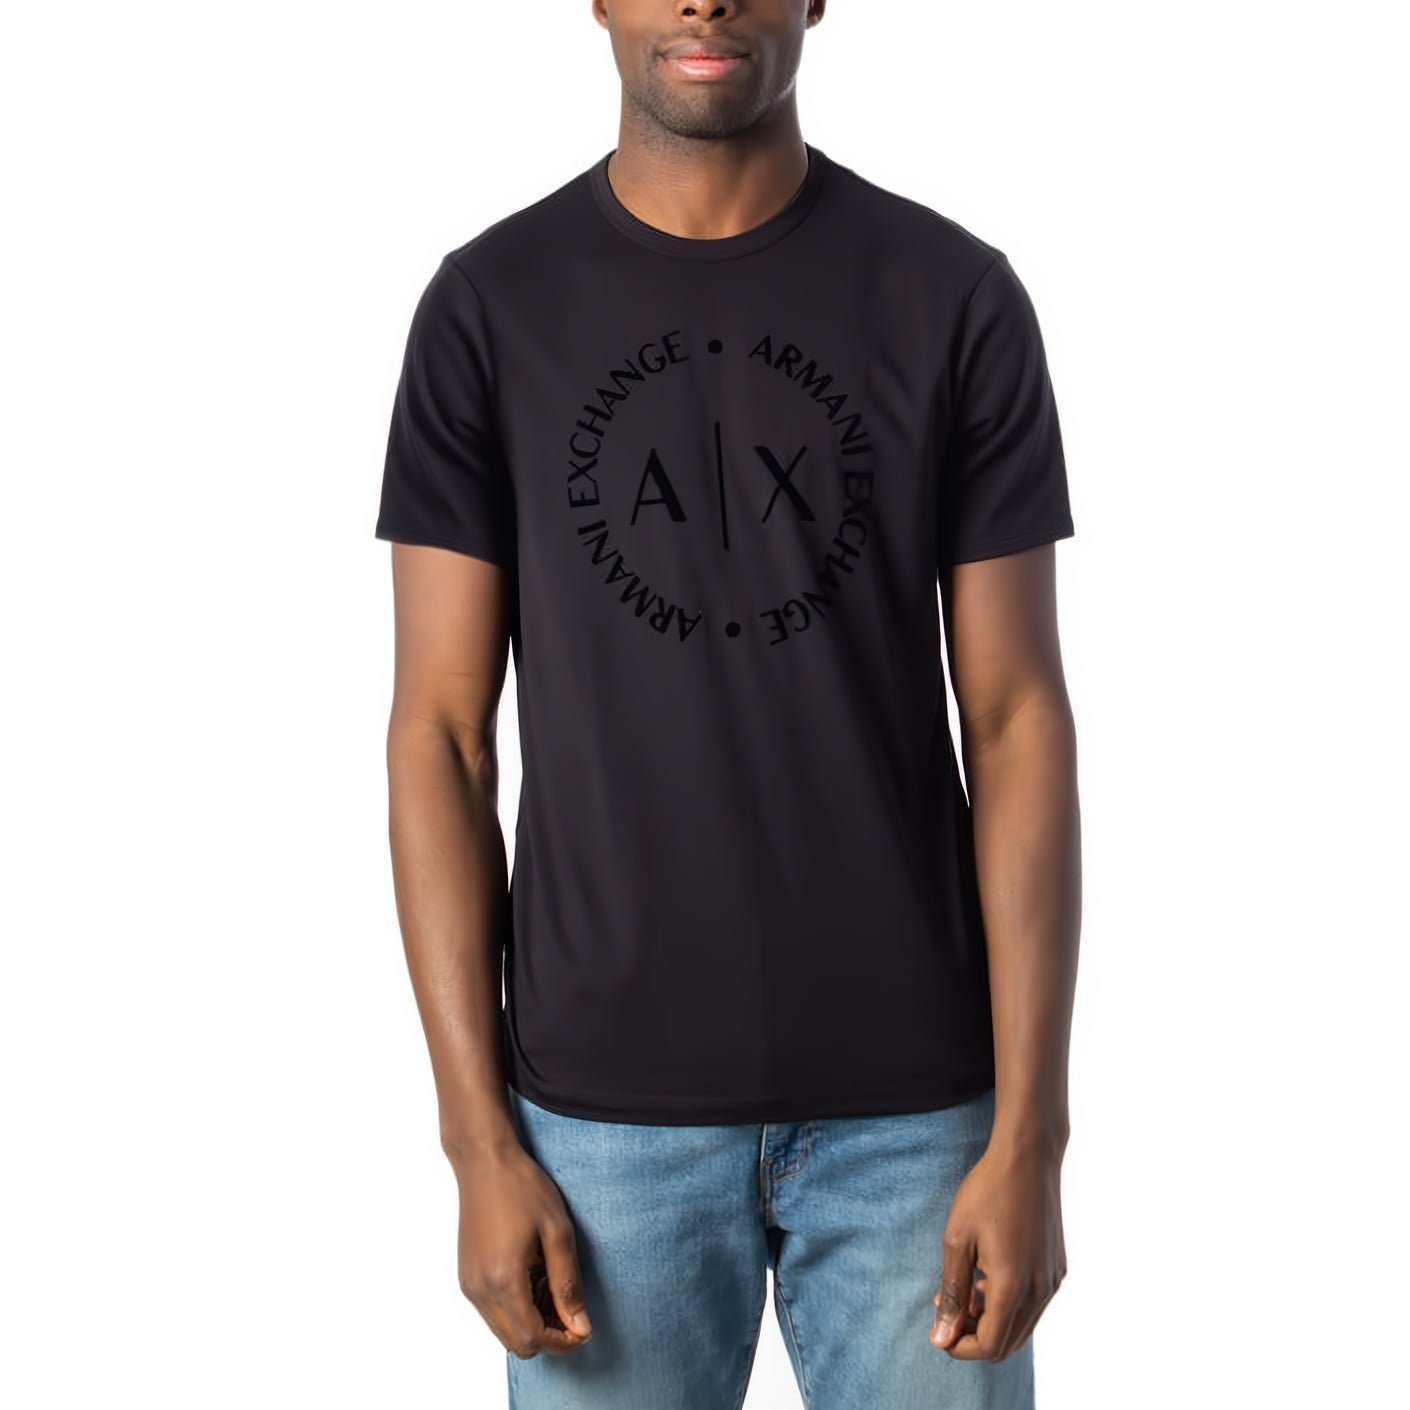 ARMANI EXCHANGE T-Shirt Must-Have für Ihre Kleidungskollektion! Rundhals, kurzarm, ein